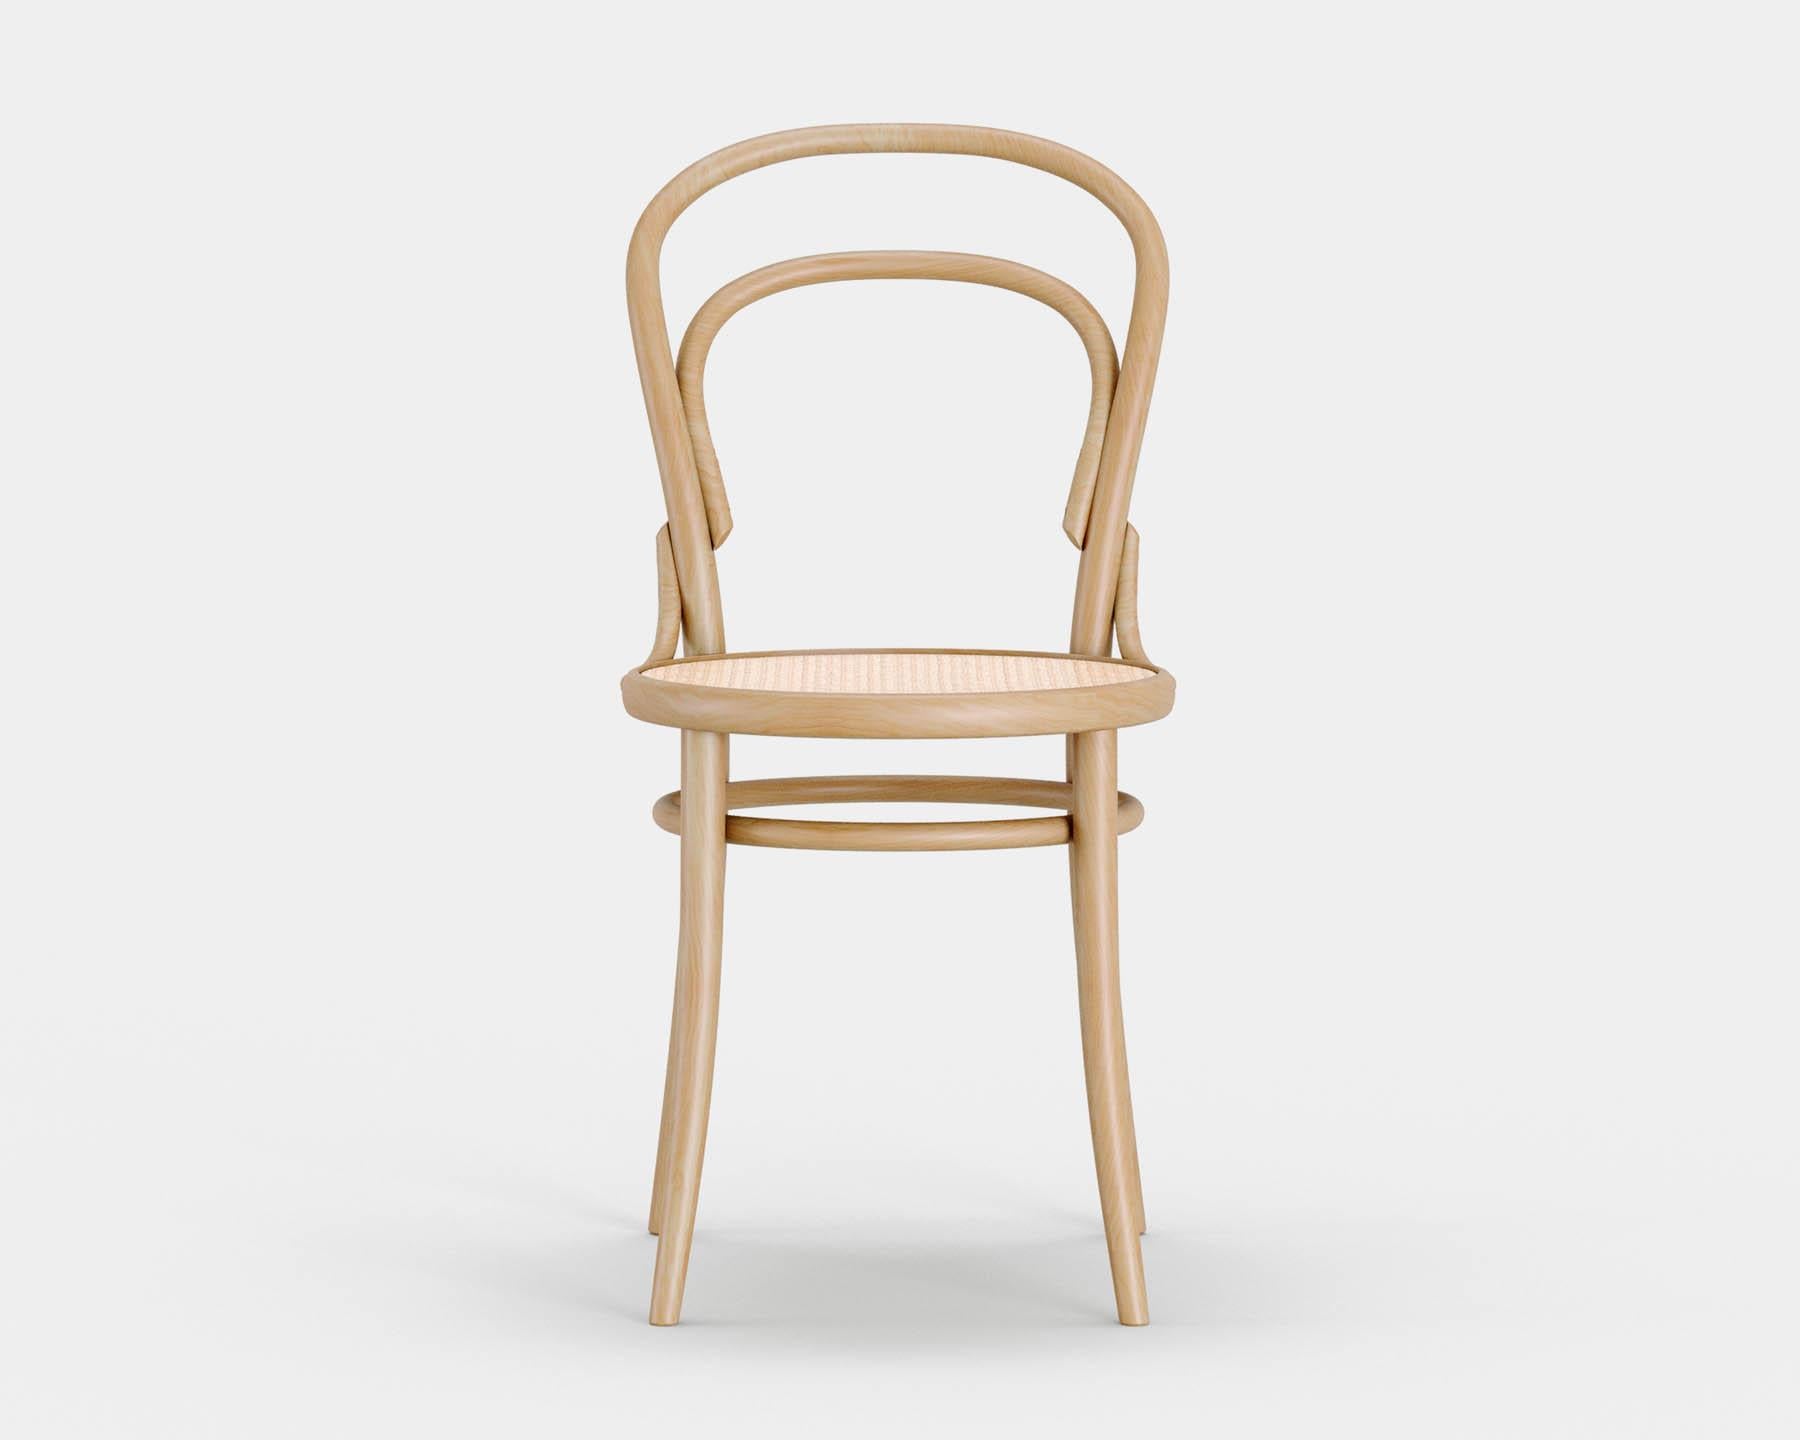 Chaise n° 14
Chaise de bistrot iconique conçue par Michael Thonet en 1869, aujourd'hui produite dans la même manufacture en République tchèque par TON. 

Bois : hêtre massif 
Nature : lumière naturelle 
Siège : peut s'asseoir.

--
La chaise